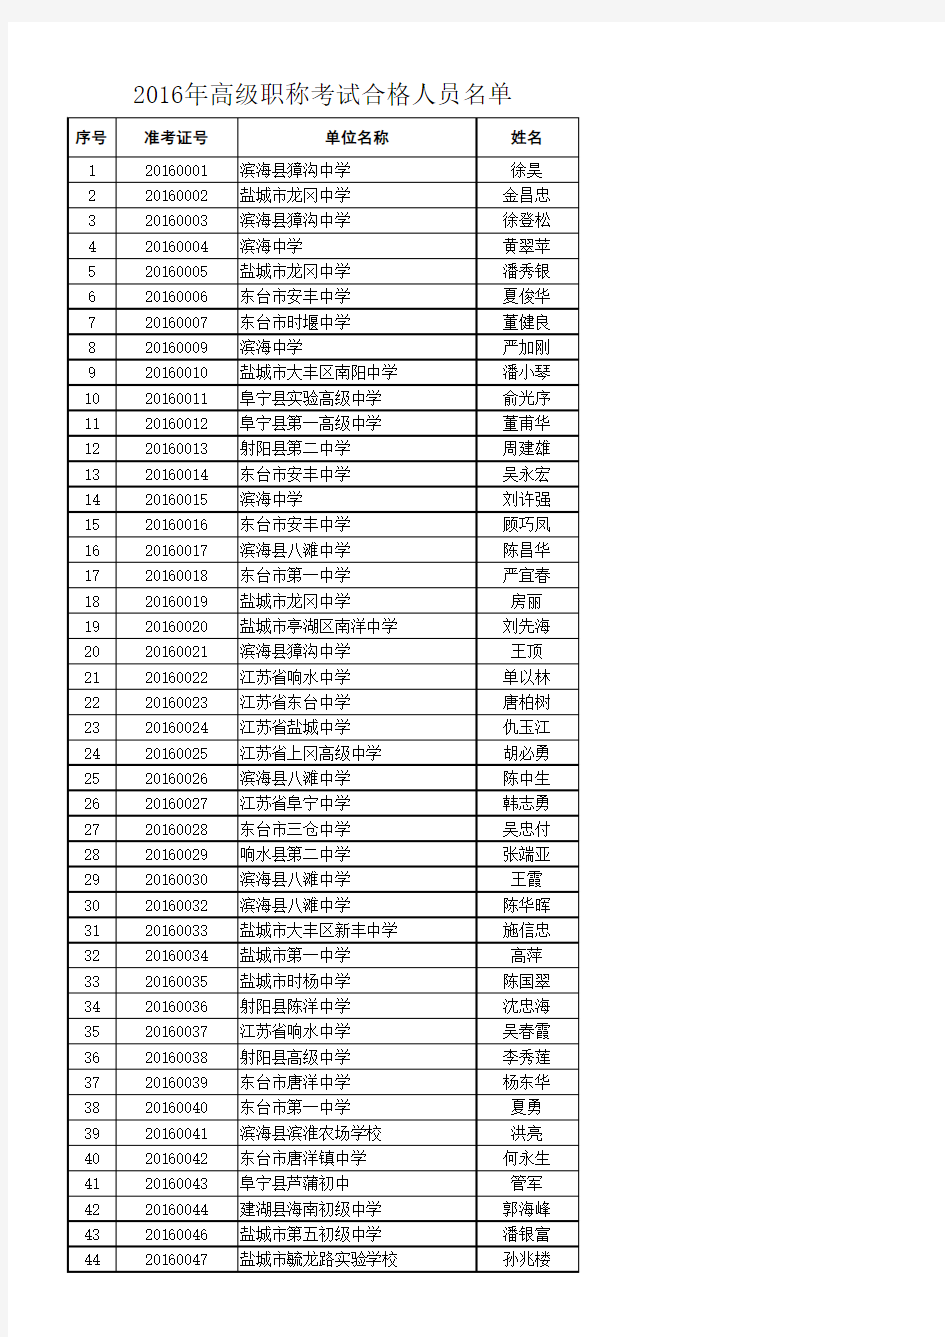 2016年高级职称考试合格人员名单(上网)